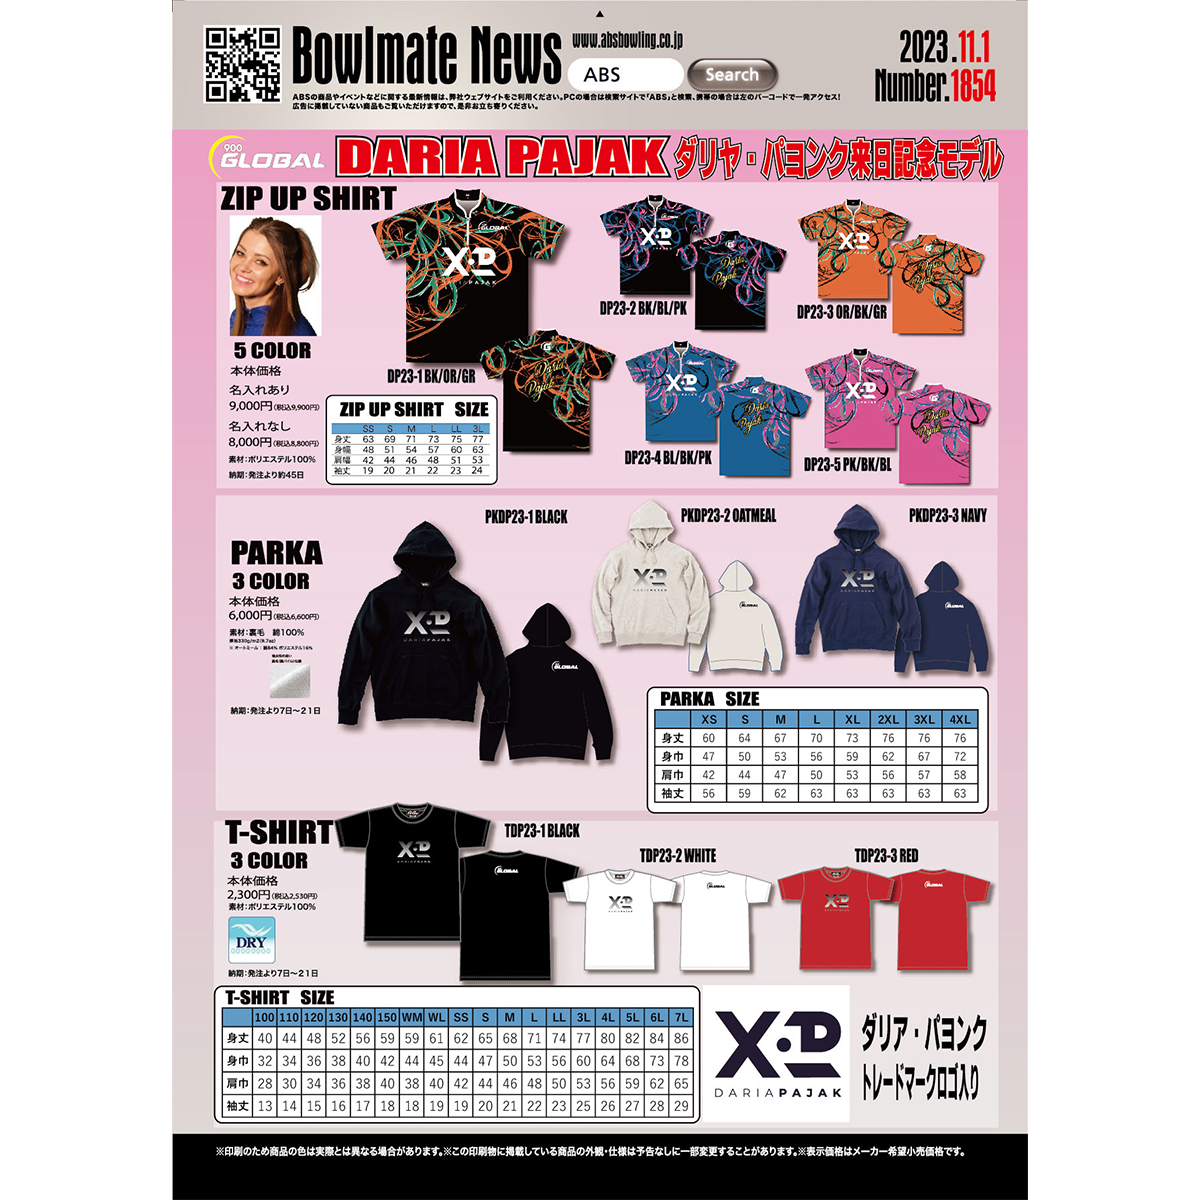 プリントジップアップシャツ(DP23-4 BL/BK/PK)(受注生産)